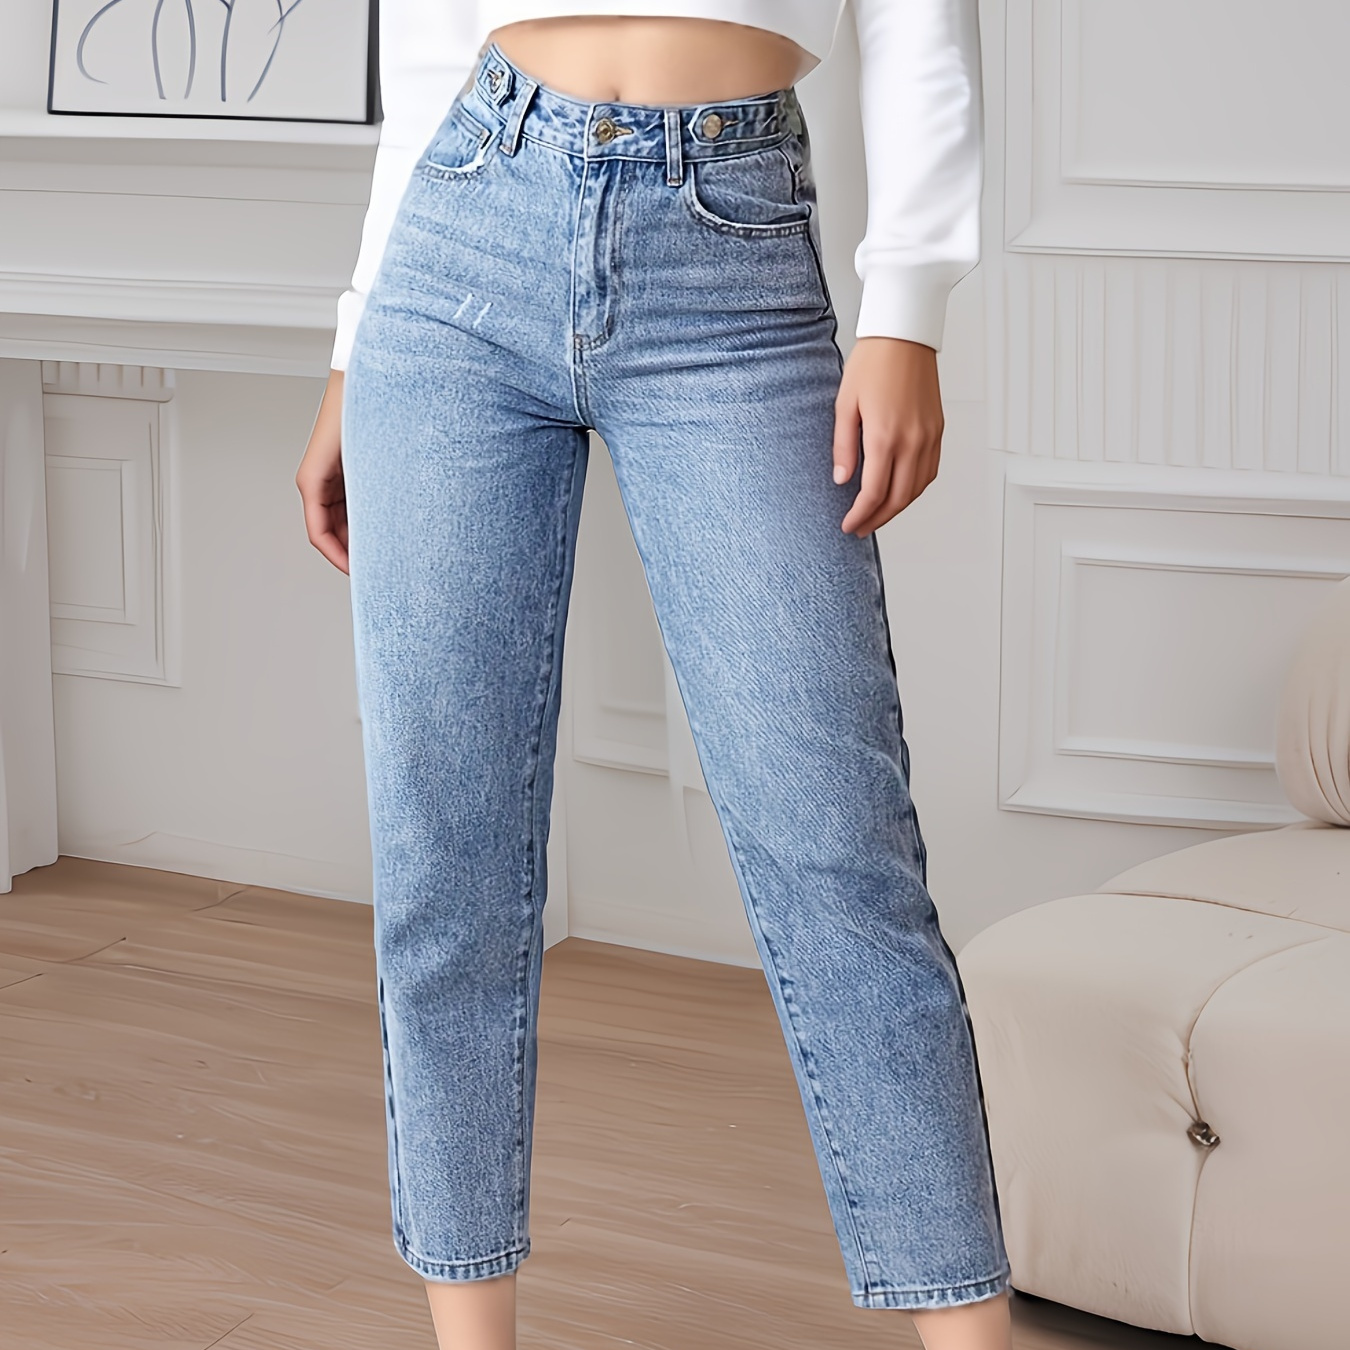 

Plain Washed Blue High Rise Slim Fit Zipper Button Closure Versatile Denim Pants, Jeans, Women's Denim Jeans & Clothing